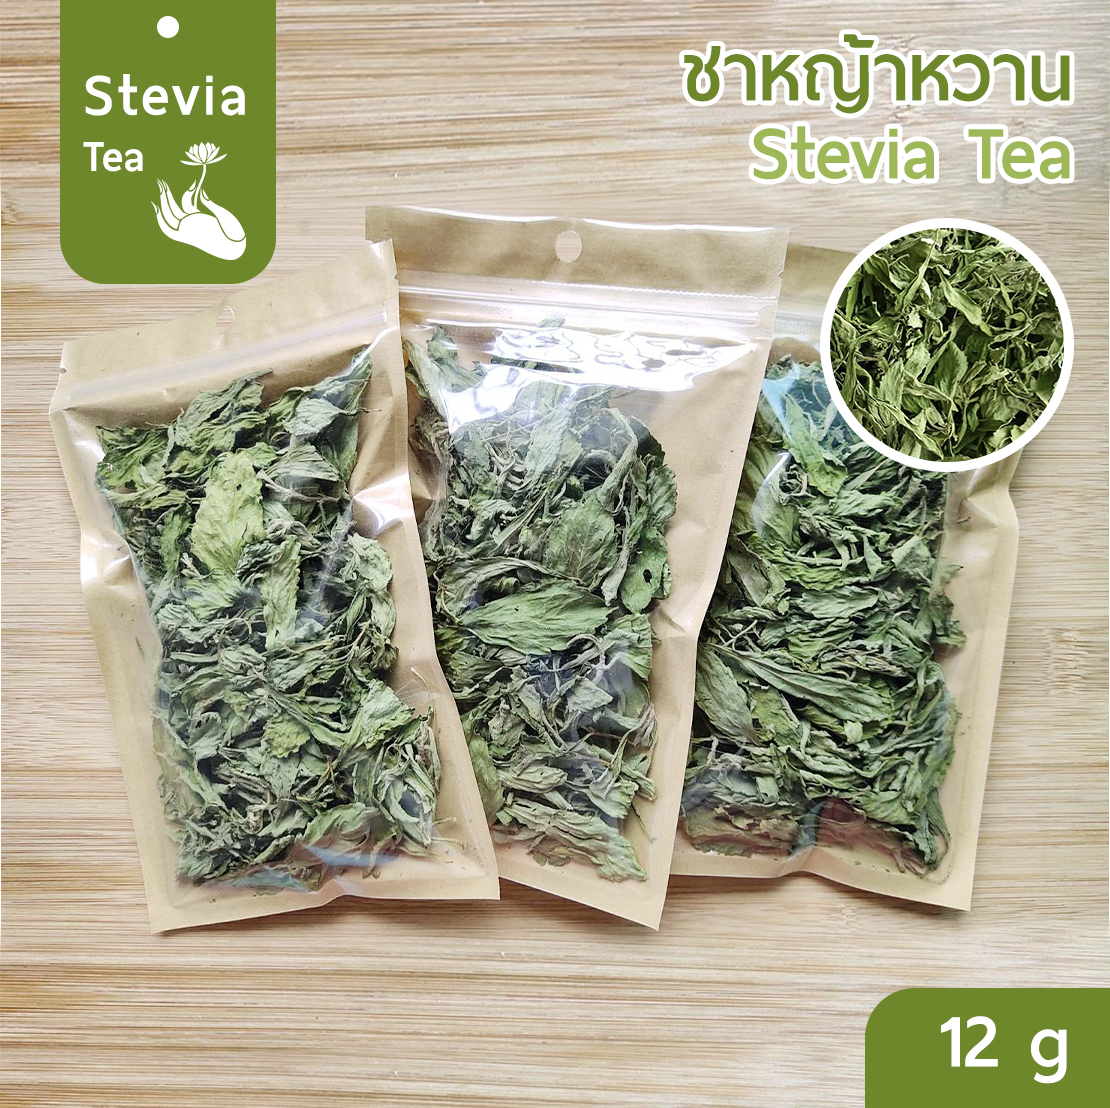 [Keto] ใบหญ้าหวาน อบแห้ง 100% ขนาดทดลอง 12 g (Stevia dried leaf) คีโต เบาหวาน ทานได้